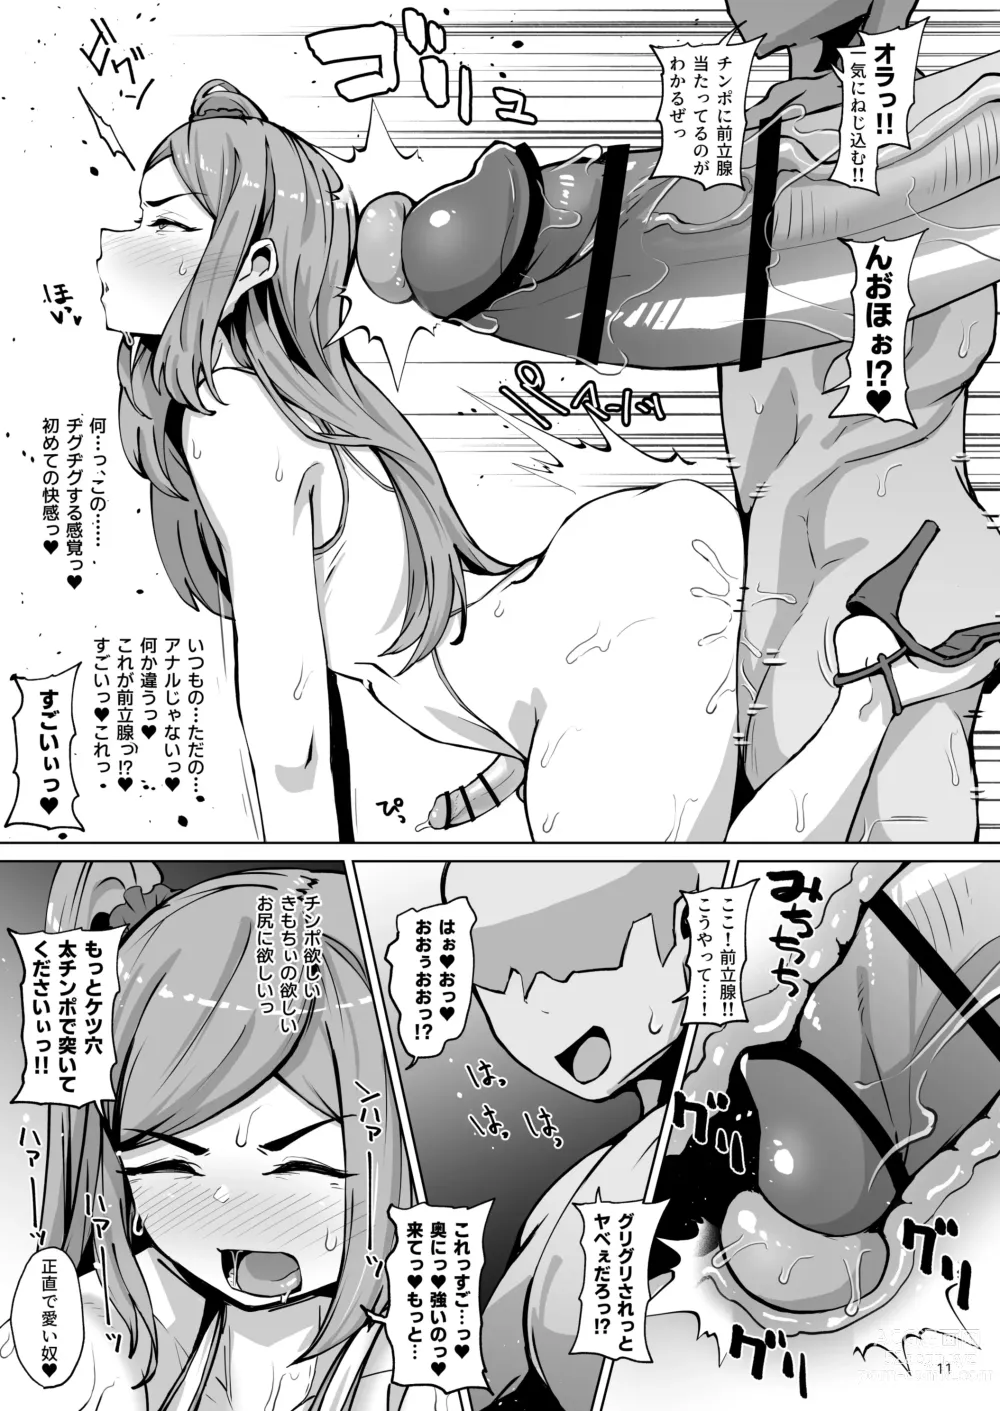 Page 10 of doujinshi Asuwohorijin Manga Gekijou Another